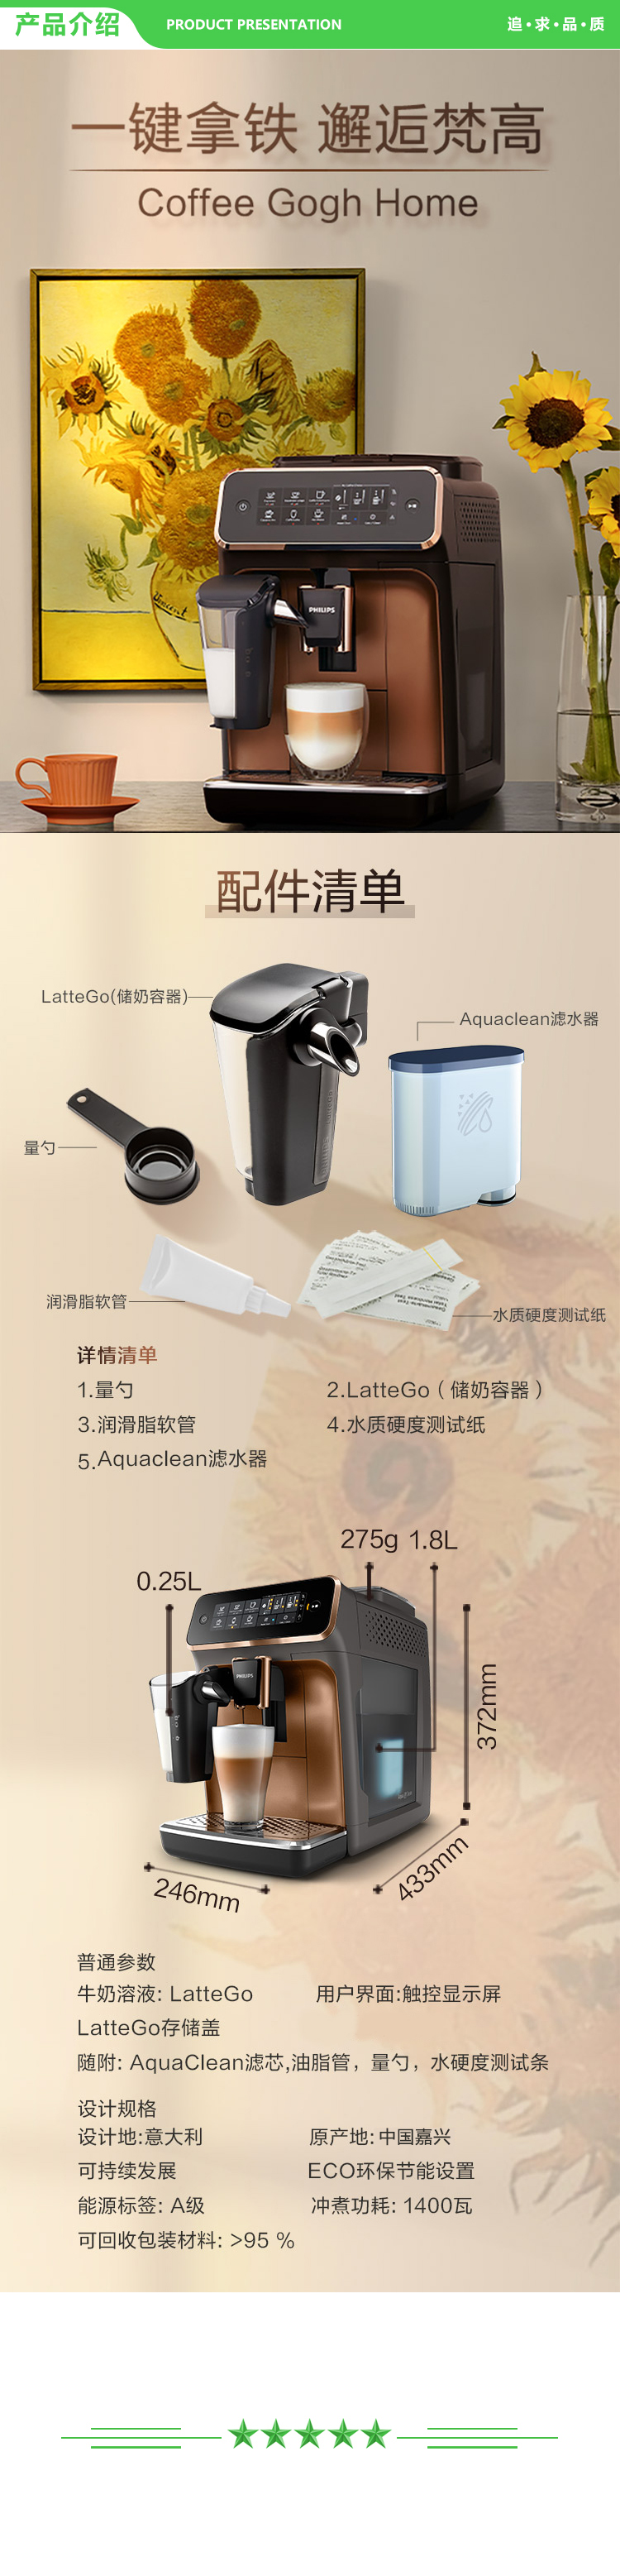 飞利浦 PHILIPS EP3146 72 咖啡机  意式全自动现磨咖啡机 Lattego奶泡系统 5 种咖啡口味  .jpg